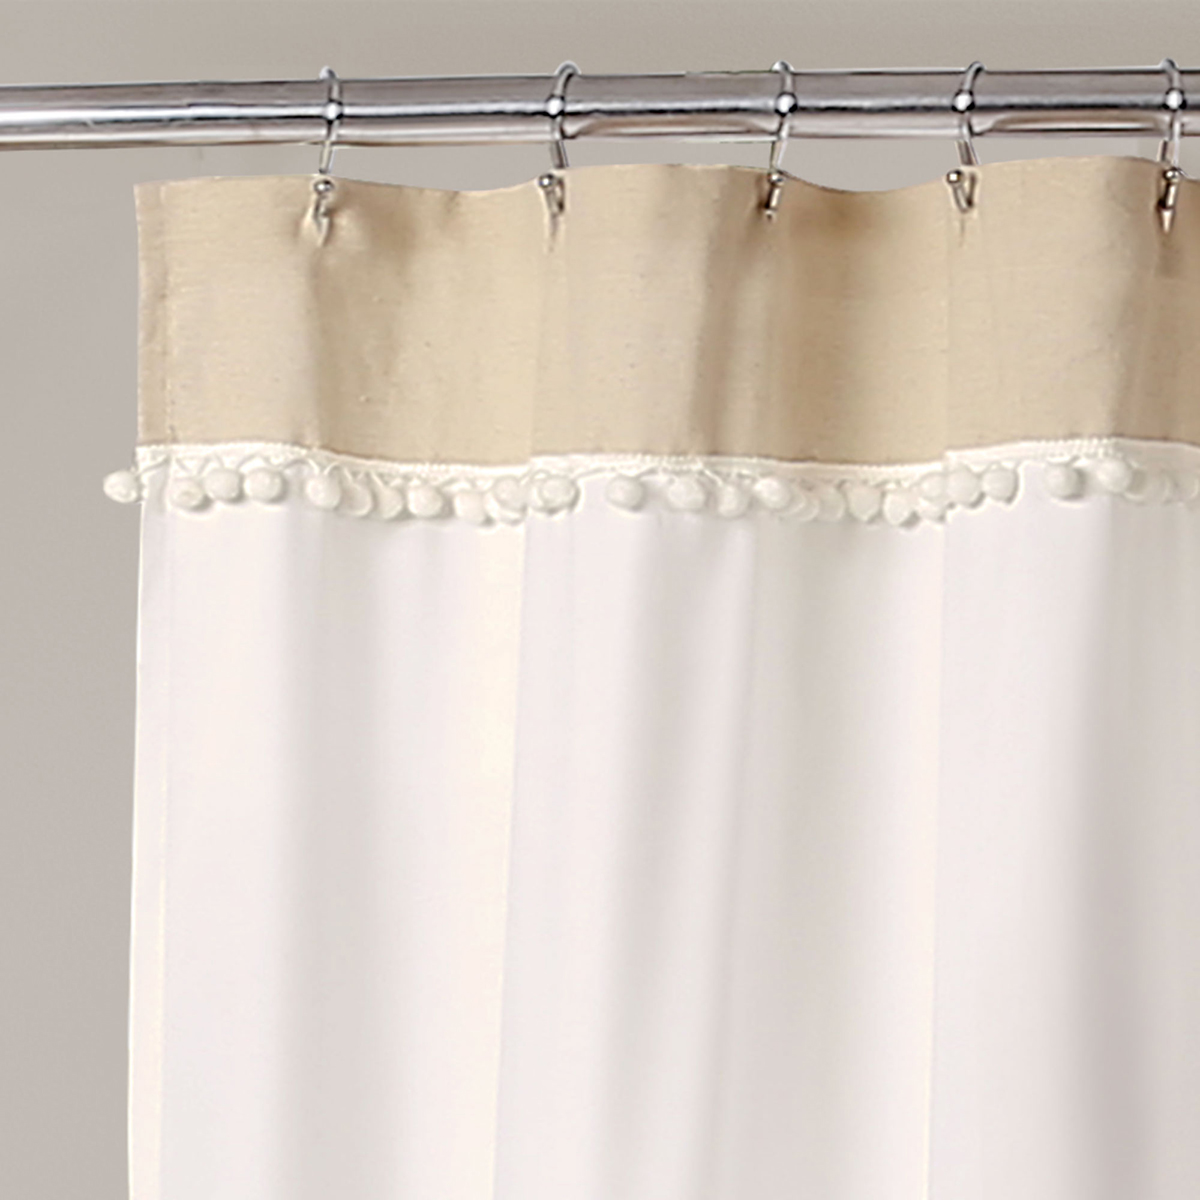 Lush Decor(R) Adelyn Pom Pom Shower Curtain